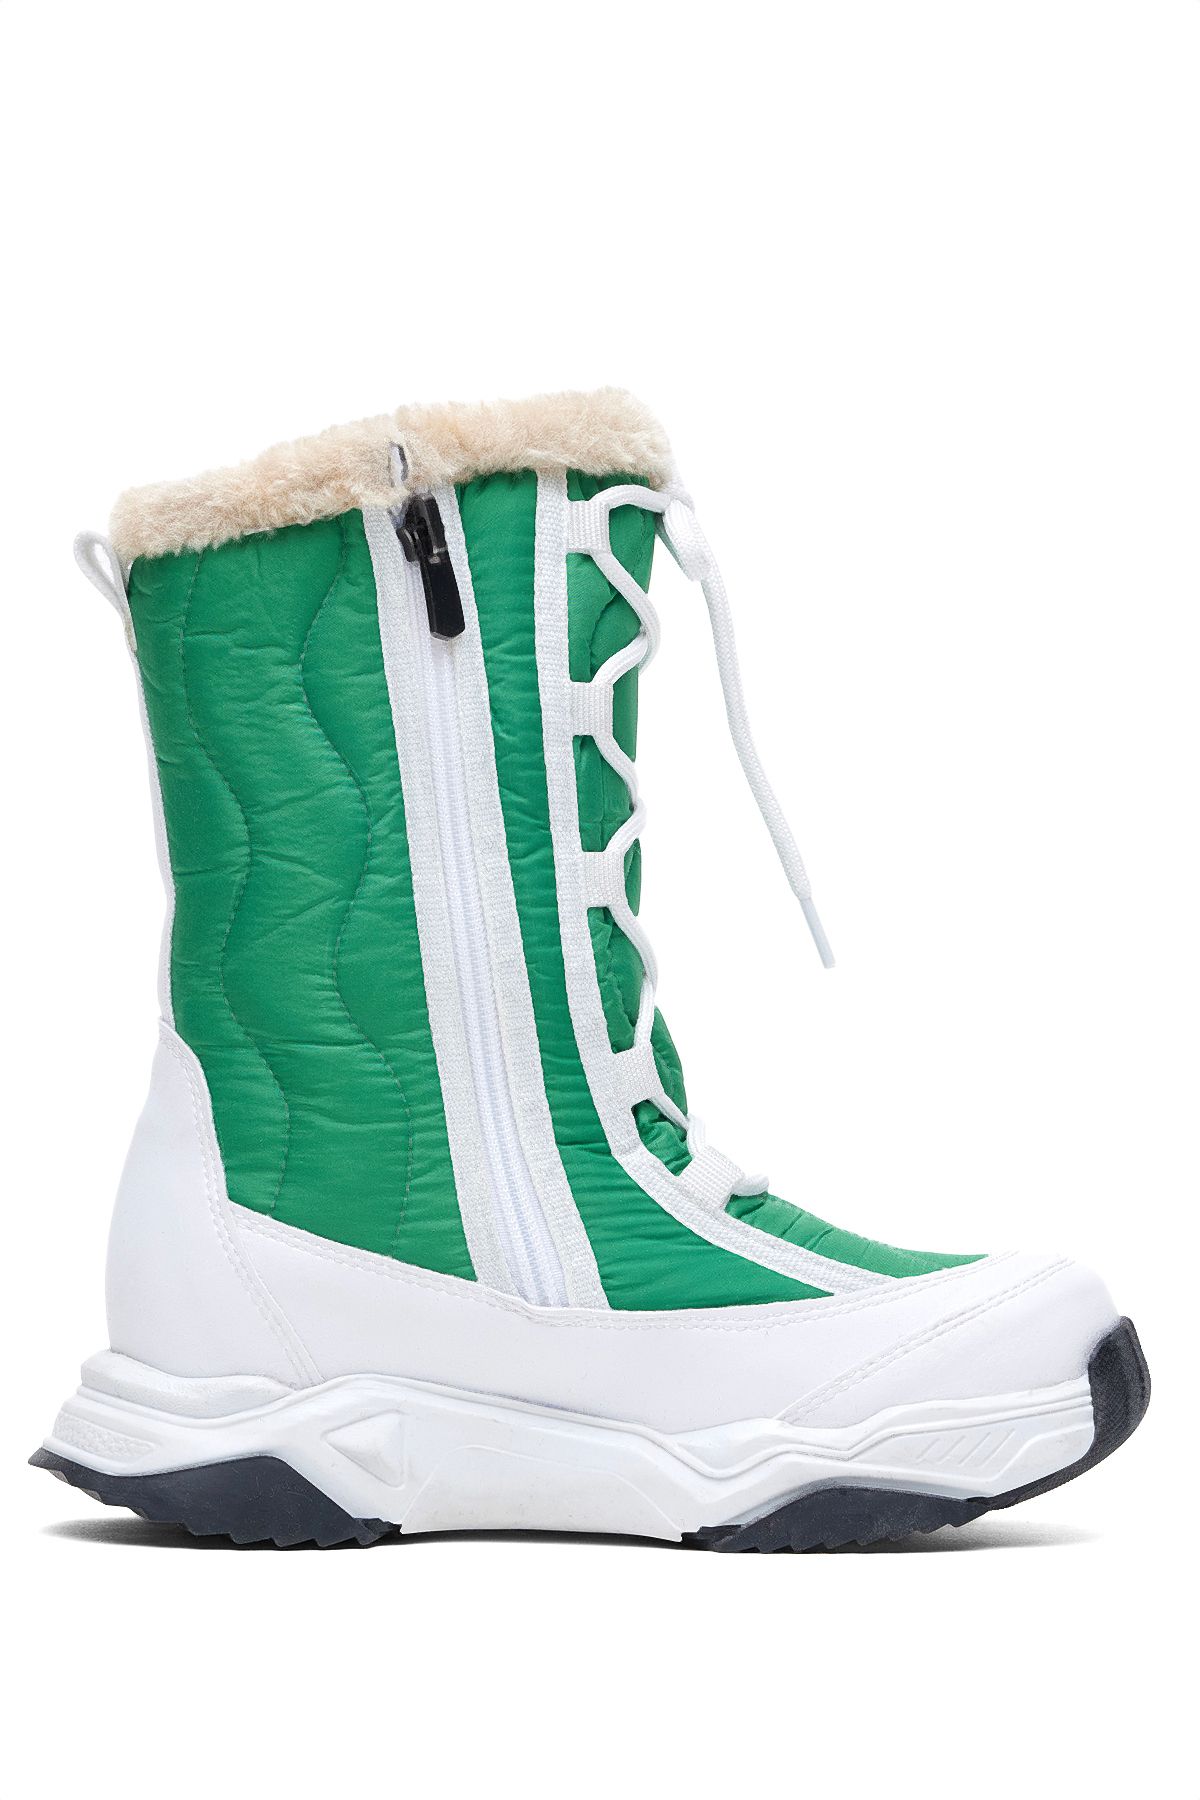 Tonny Black Çocuk Unisex Beyaz Yeşil Rahat Kalıp Spor Taban Bağcık Detaylı Kar Botu